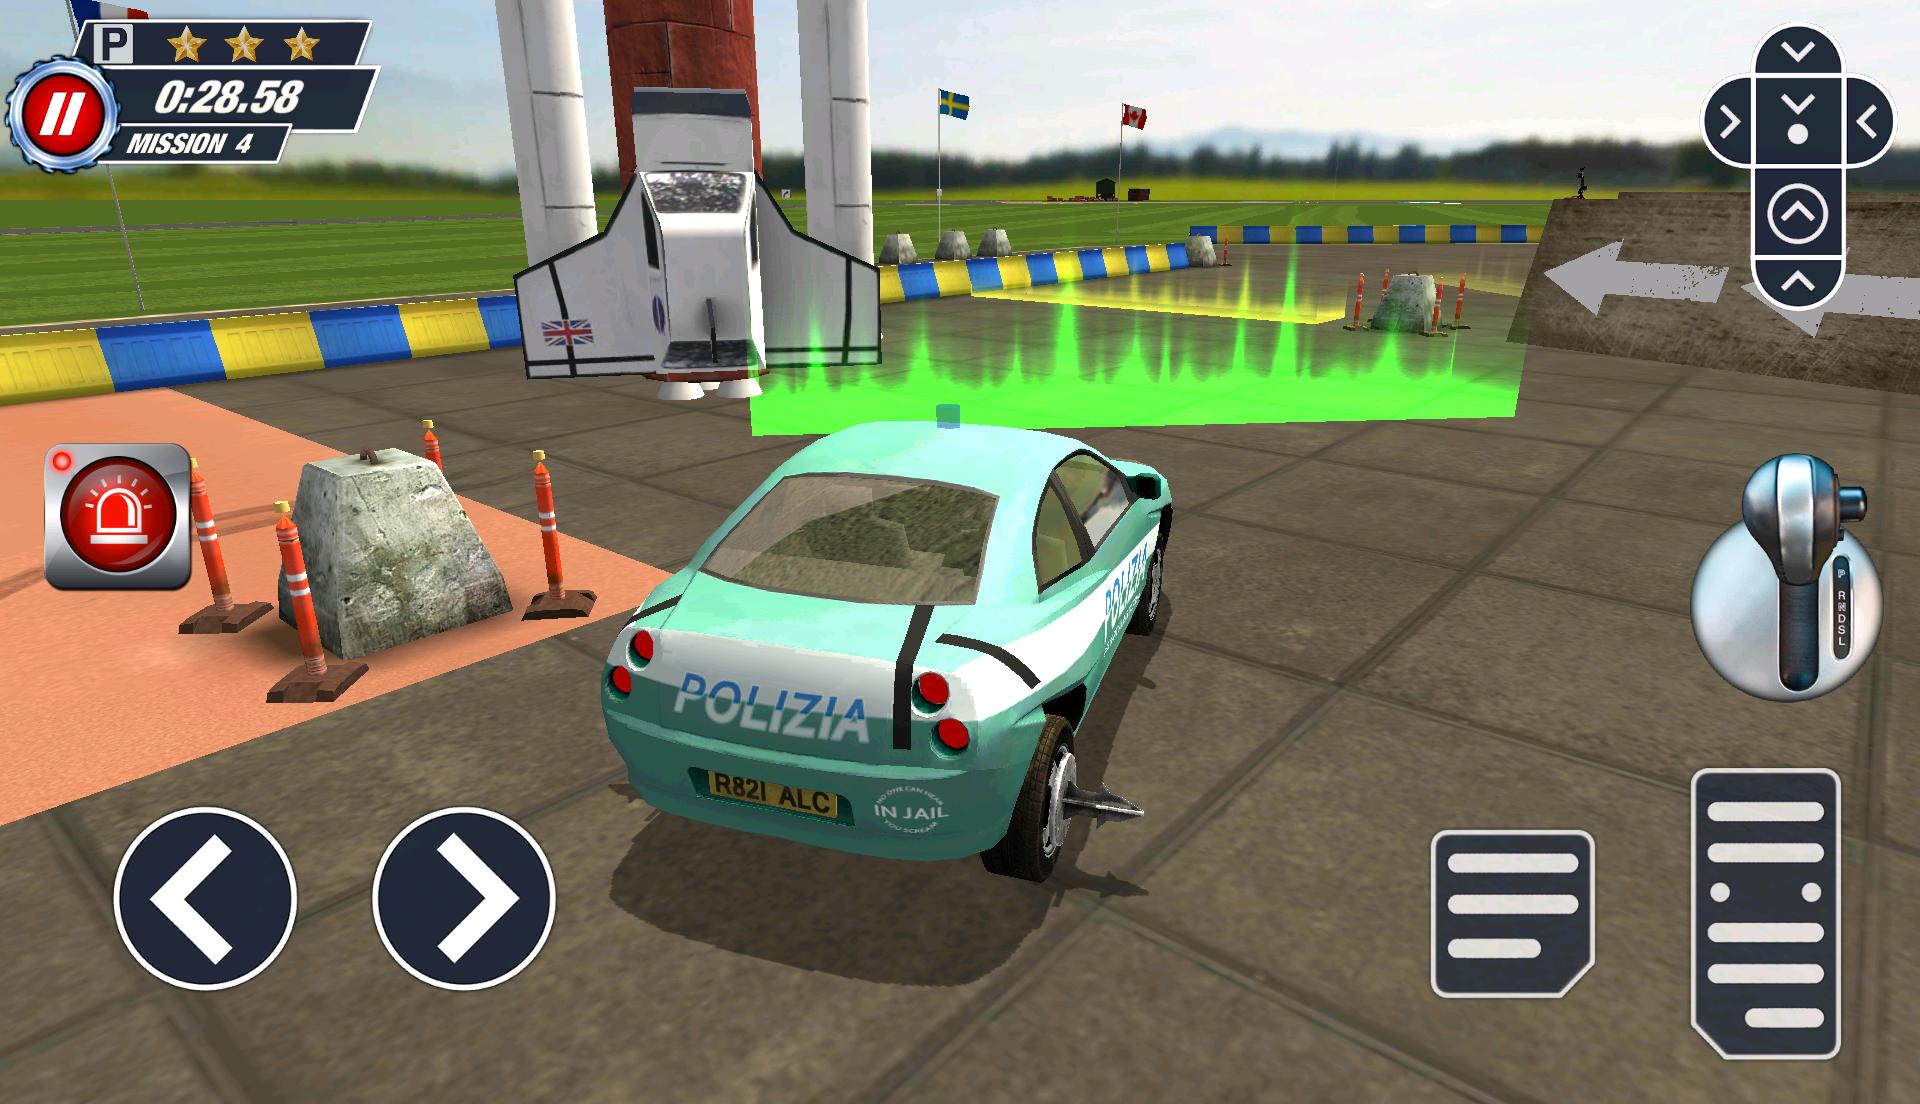 Top Gear - Extreme Parking para Android - APK Baixar